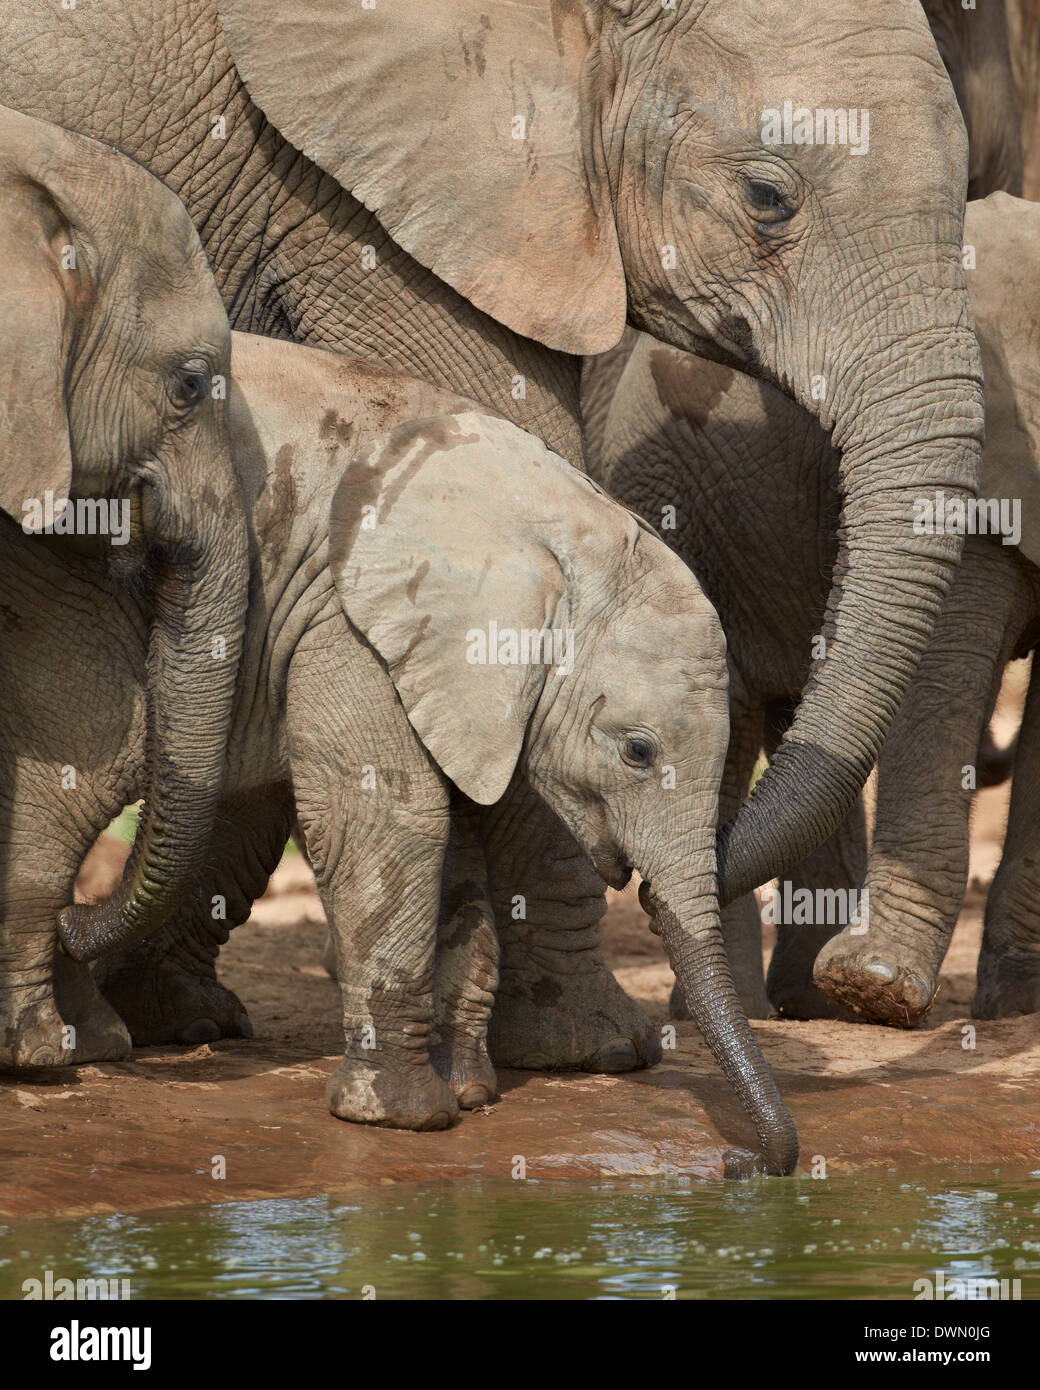 Bébé éléphant africain (Loxodonta africana) boire, Addo Elephant National Park, Afrique du Sud, l'Afrique Banque D'Images